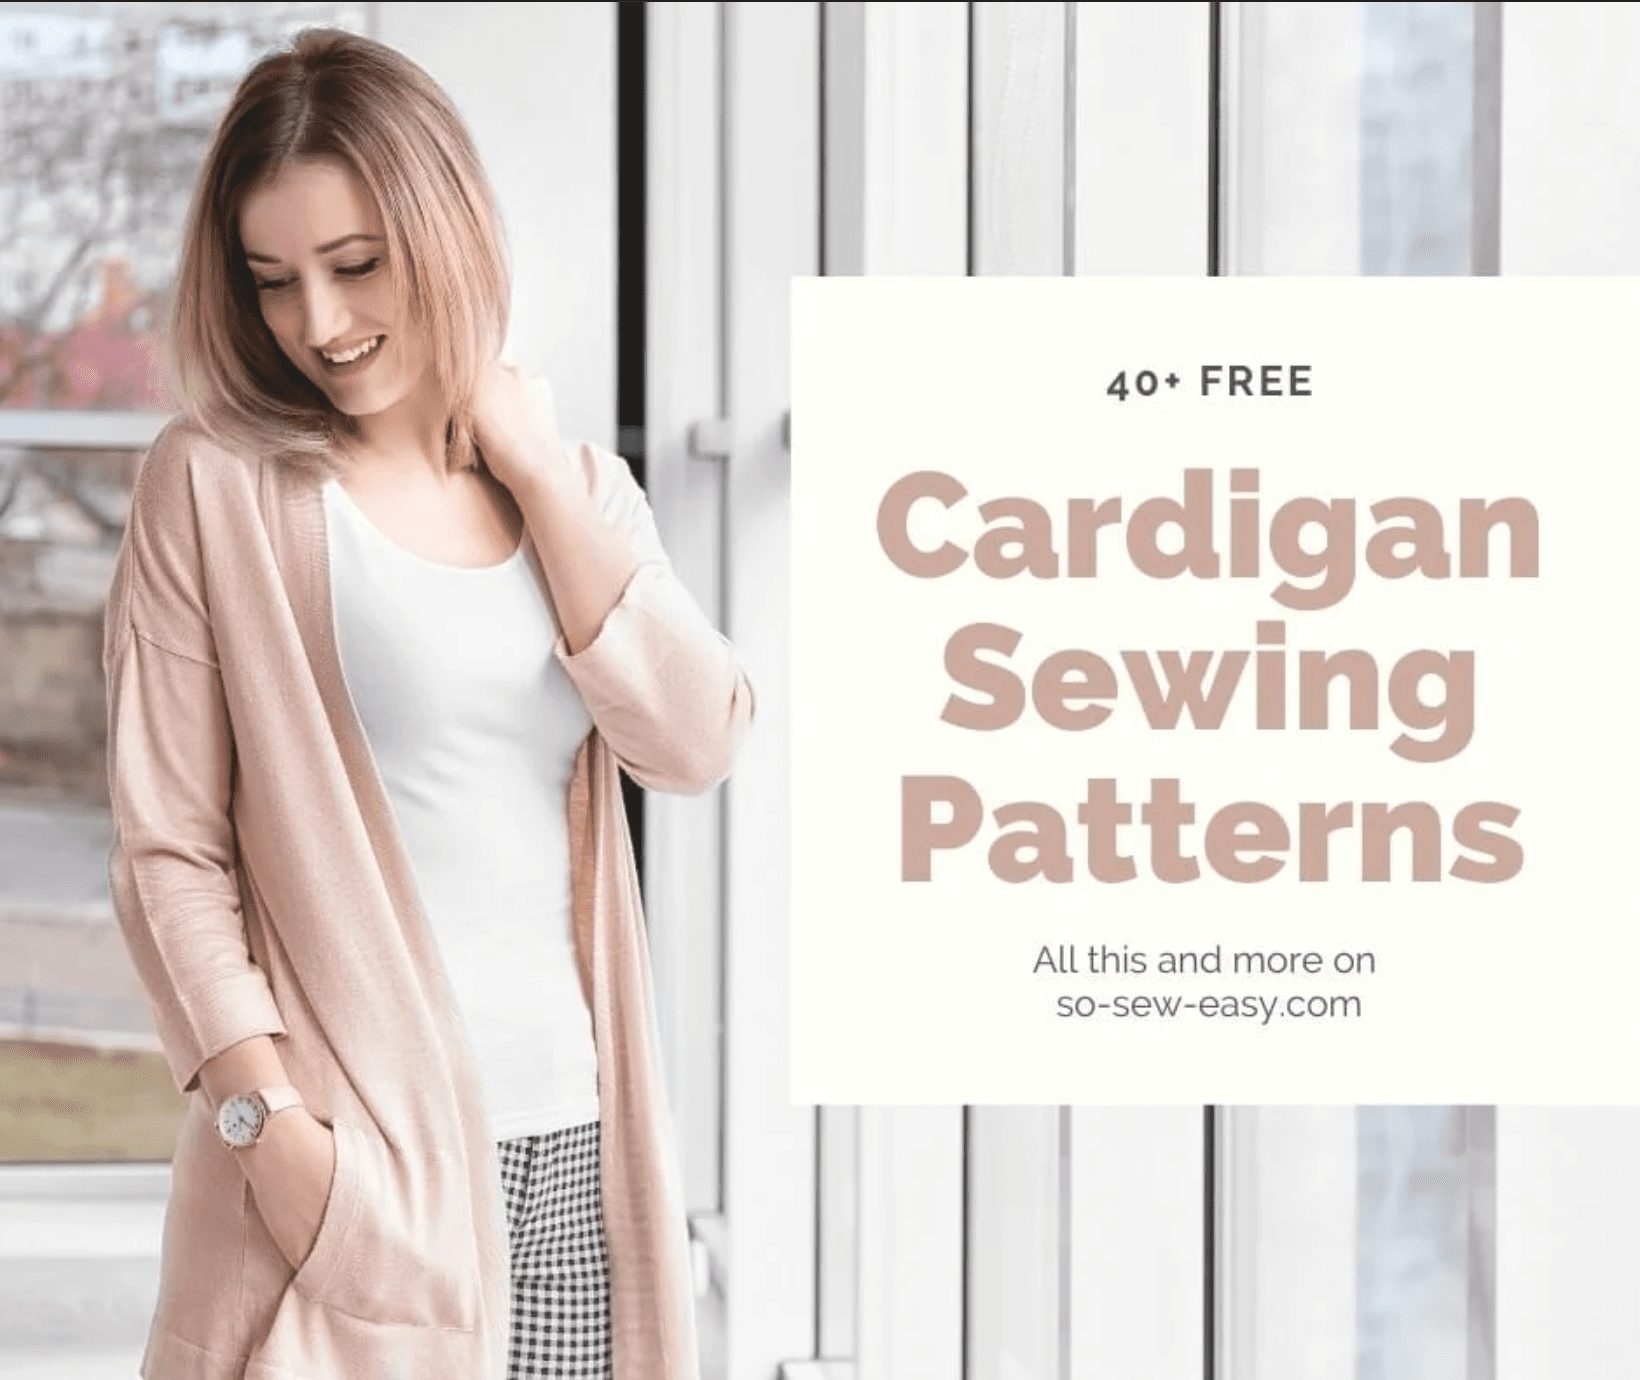 40+ FREE Cardigan Sewing Patterns: Staying Warm | Sewing 4 Free